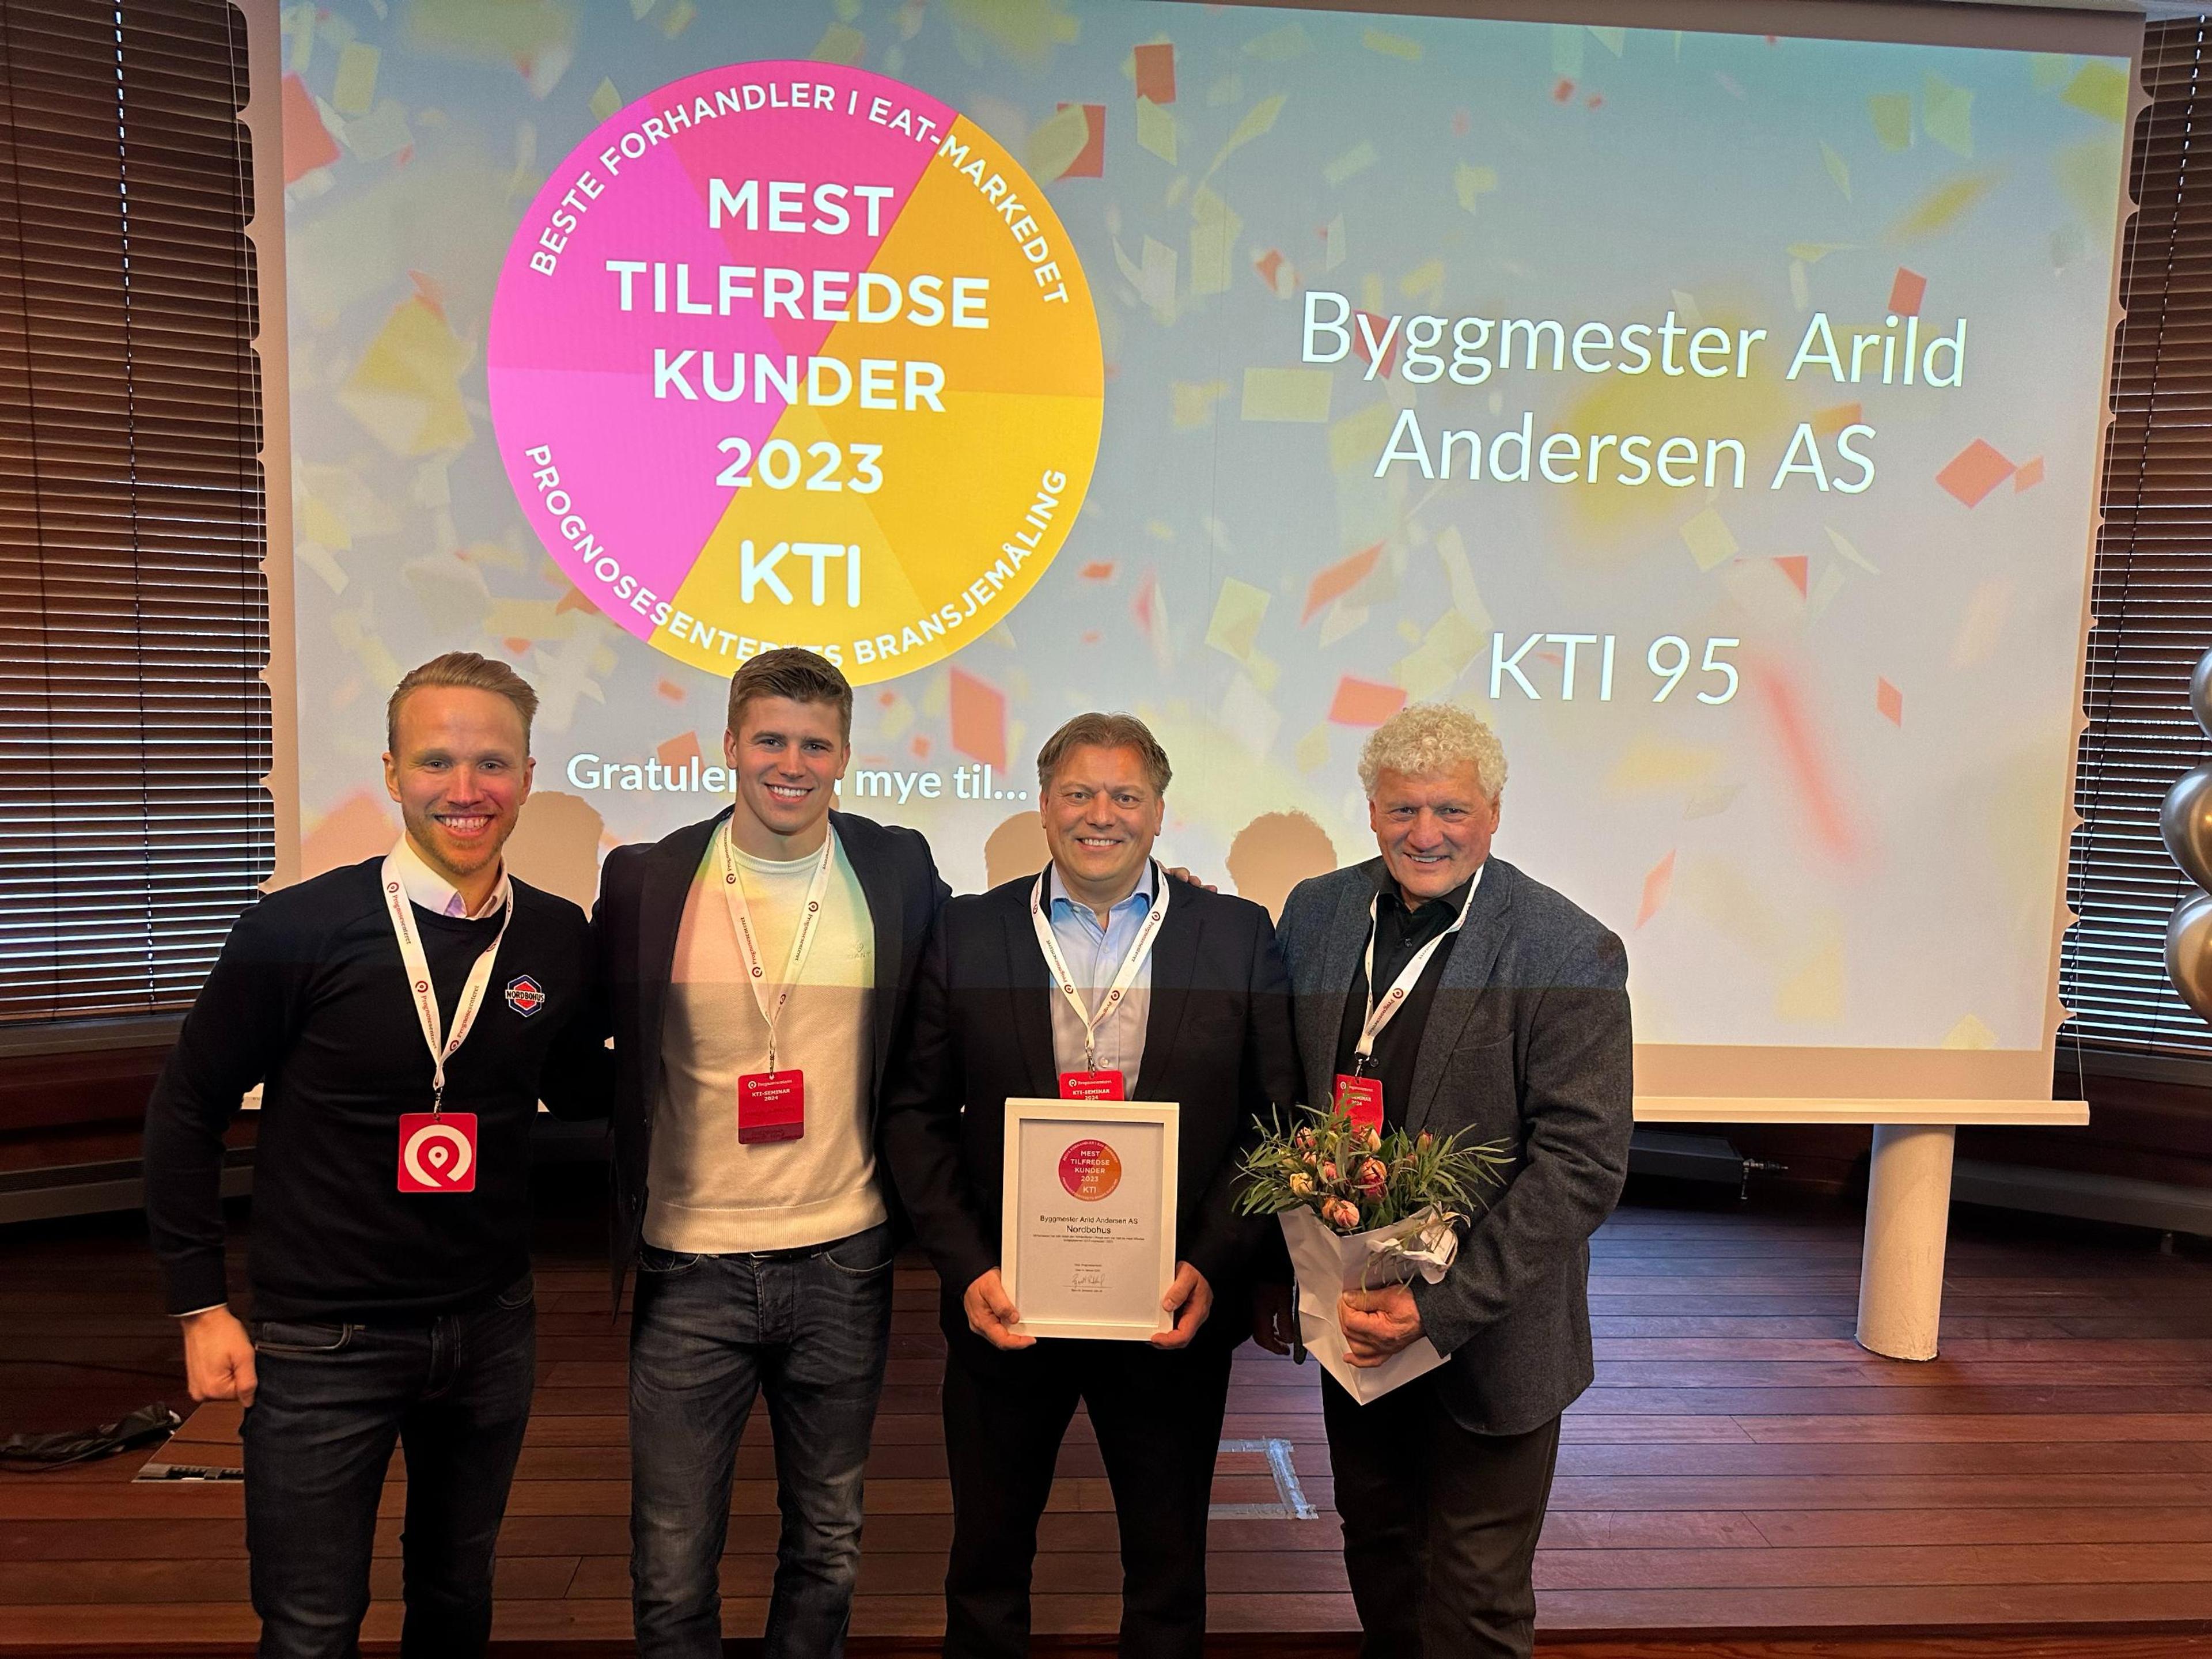 Byggmester Arild Andersen tok, som i 2015, 1.plass med Norges mest tilfredse kunder 2023.